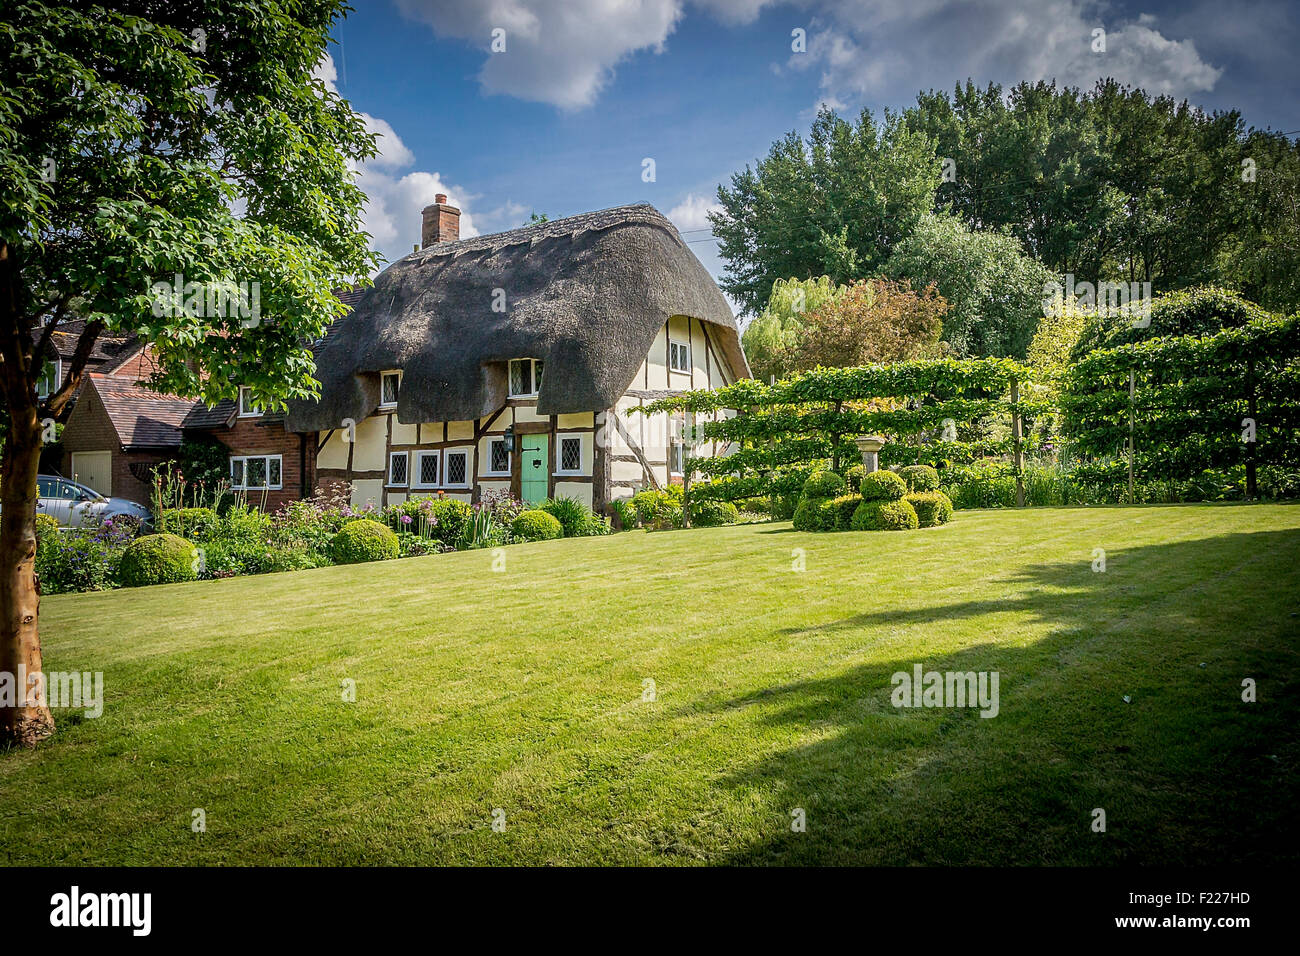 Pintoresca casita con techo de paja y jardín inglés Foto de stock